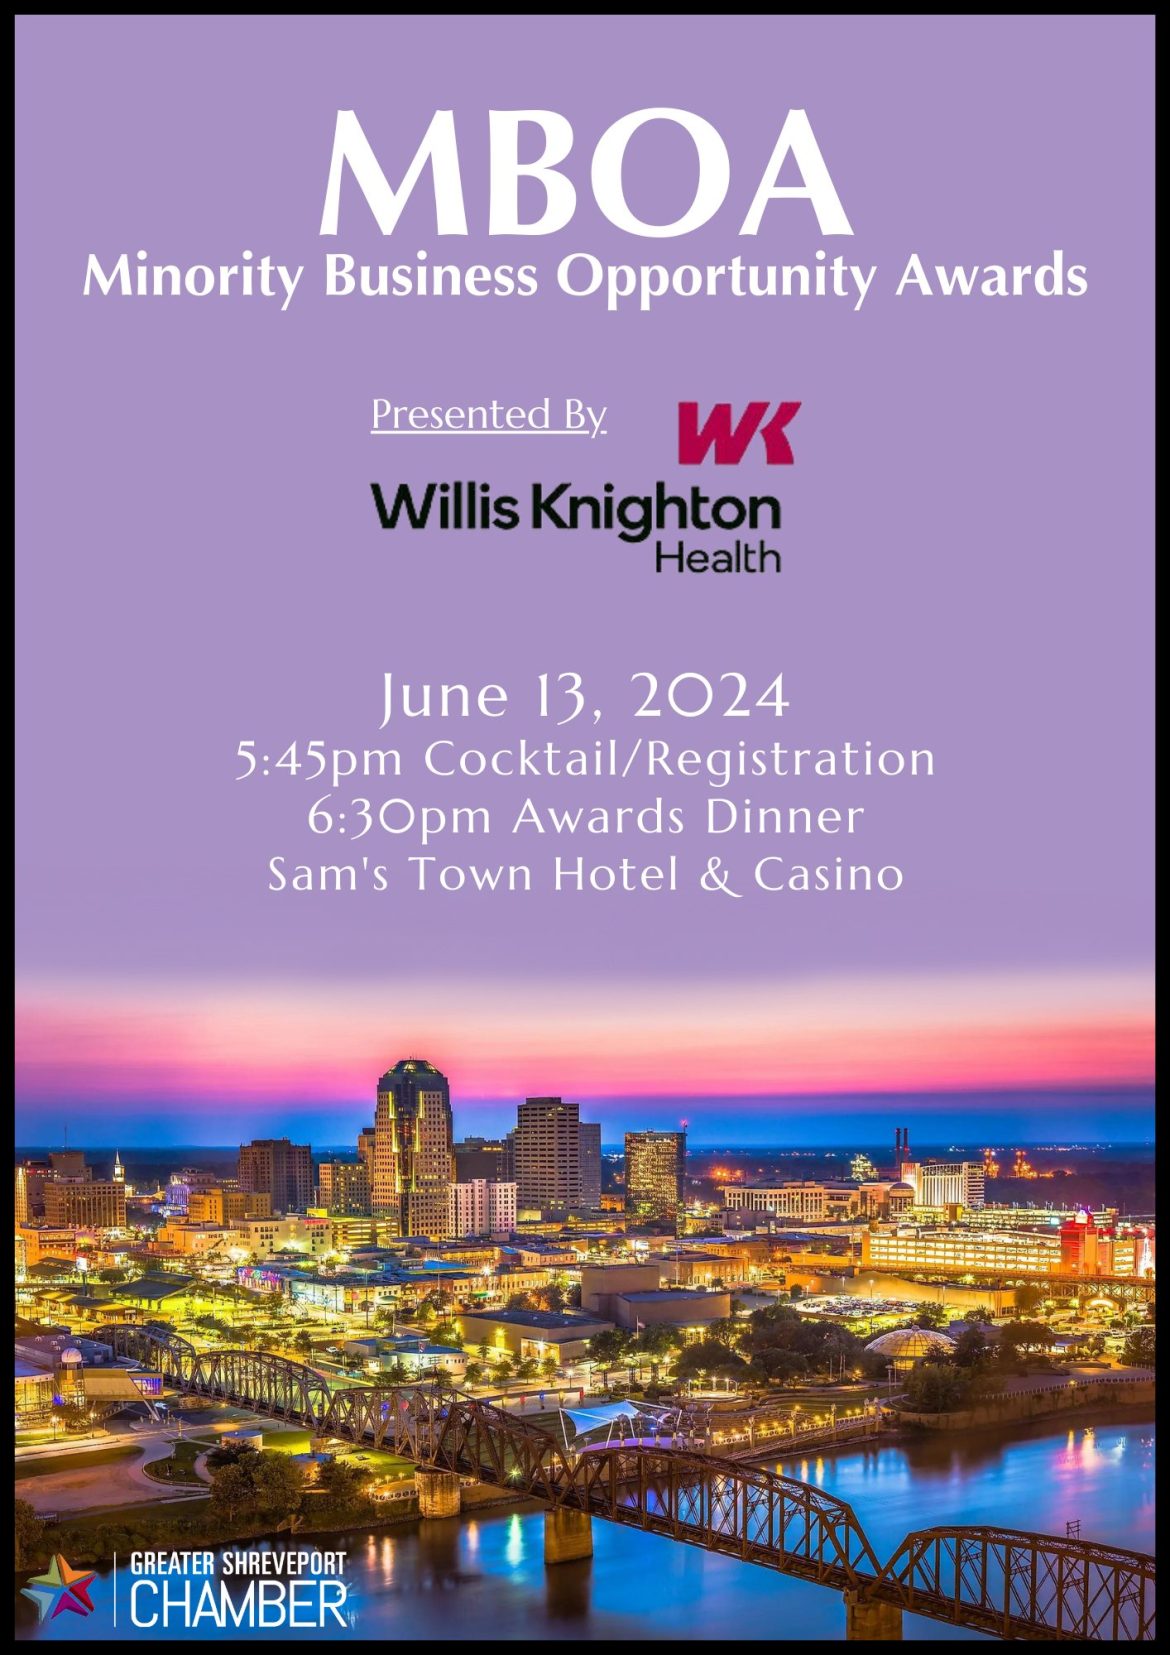 Greater Shreveport Chamber of Commerce to Host Annual Minority Business Opportunity Awards Dinner  BIZ  Northwest Louisiana [Video]